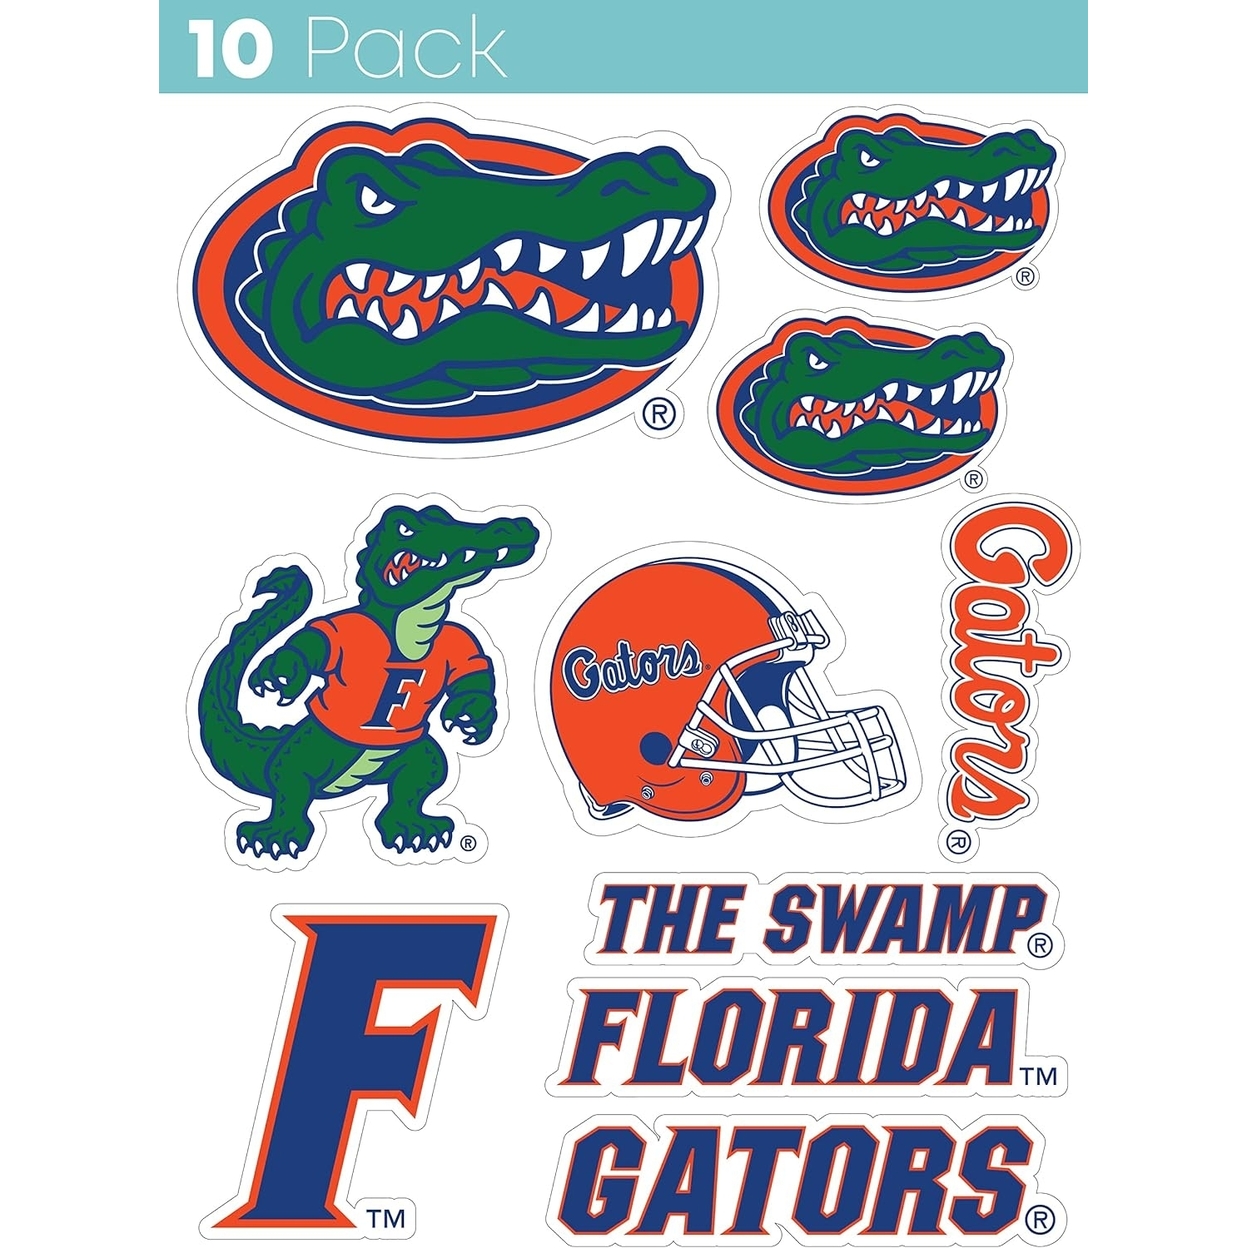 Florida Gators 10 Pack Collegiate Vinyl Decal Sticker